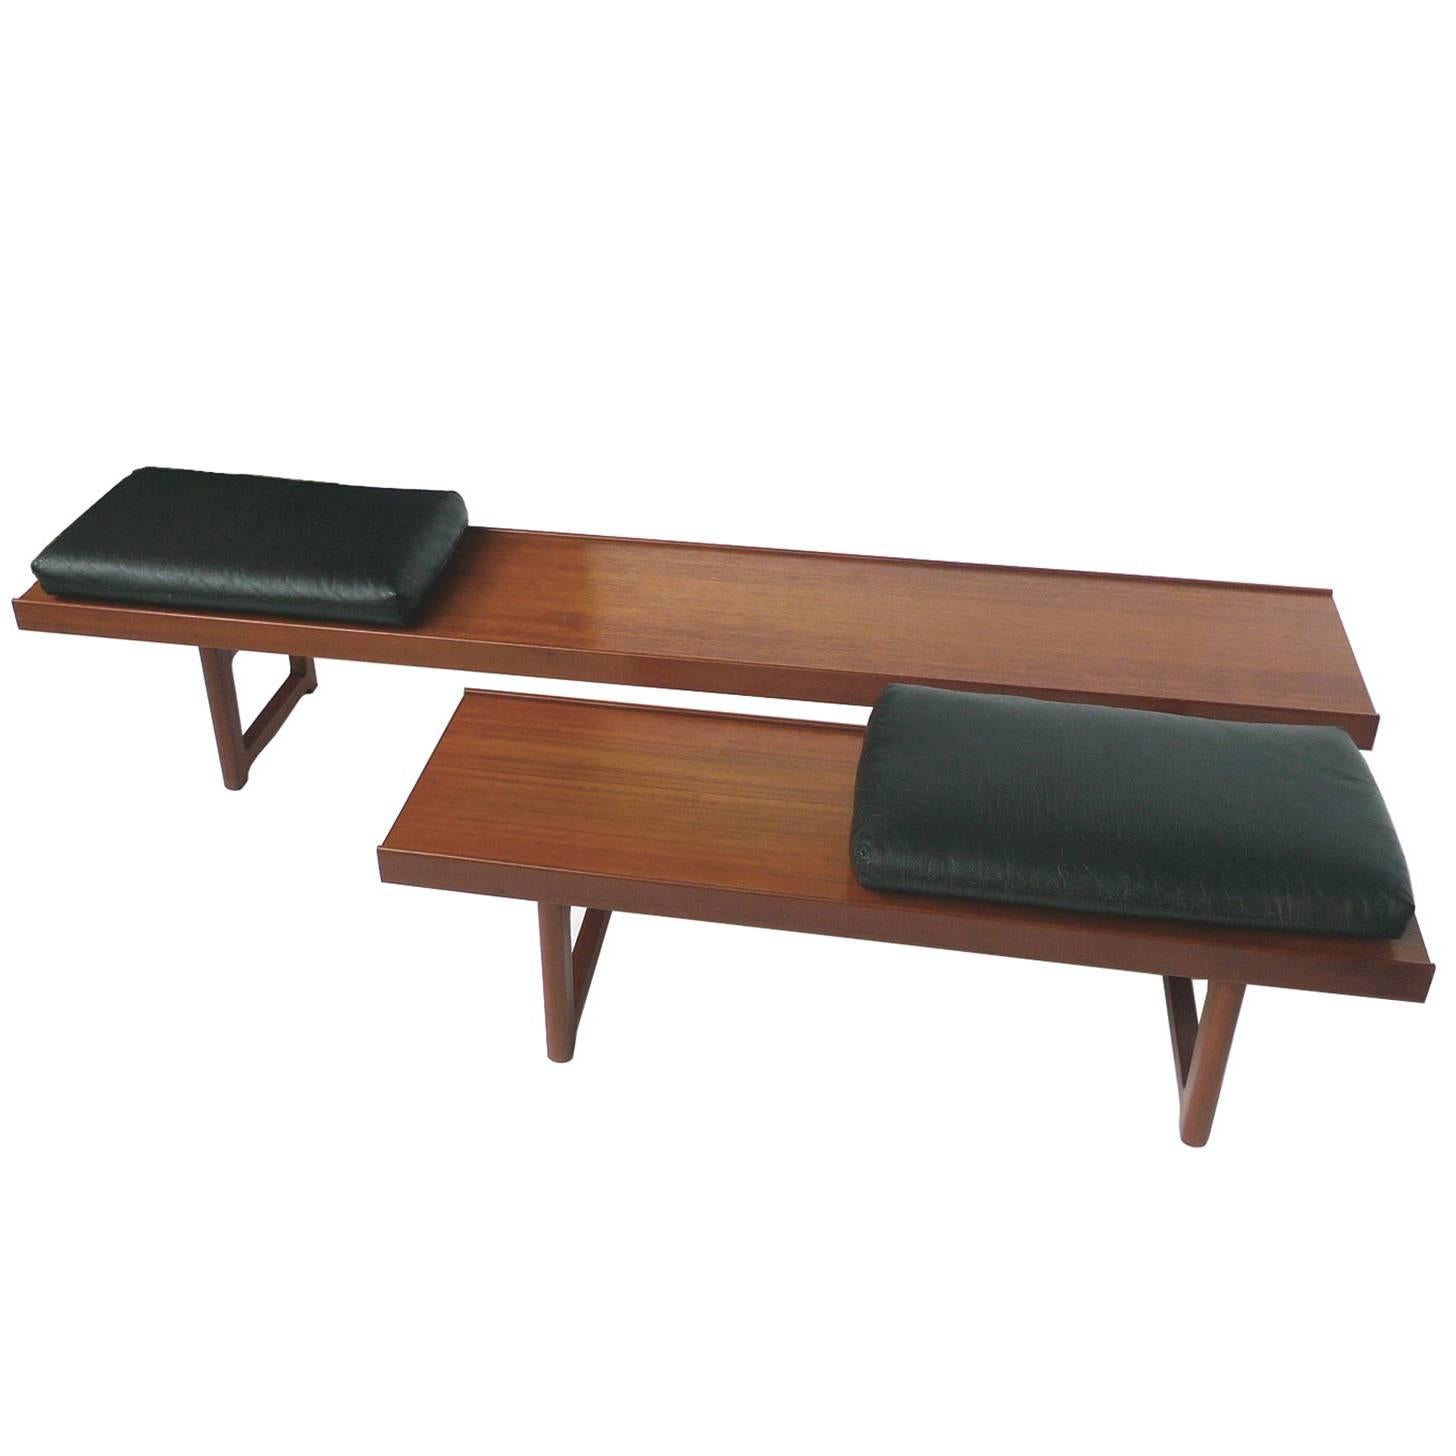 Set of Two Solid Teak Bench-Tables by Torbjørn Afdal for Bruksbo, Norway